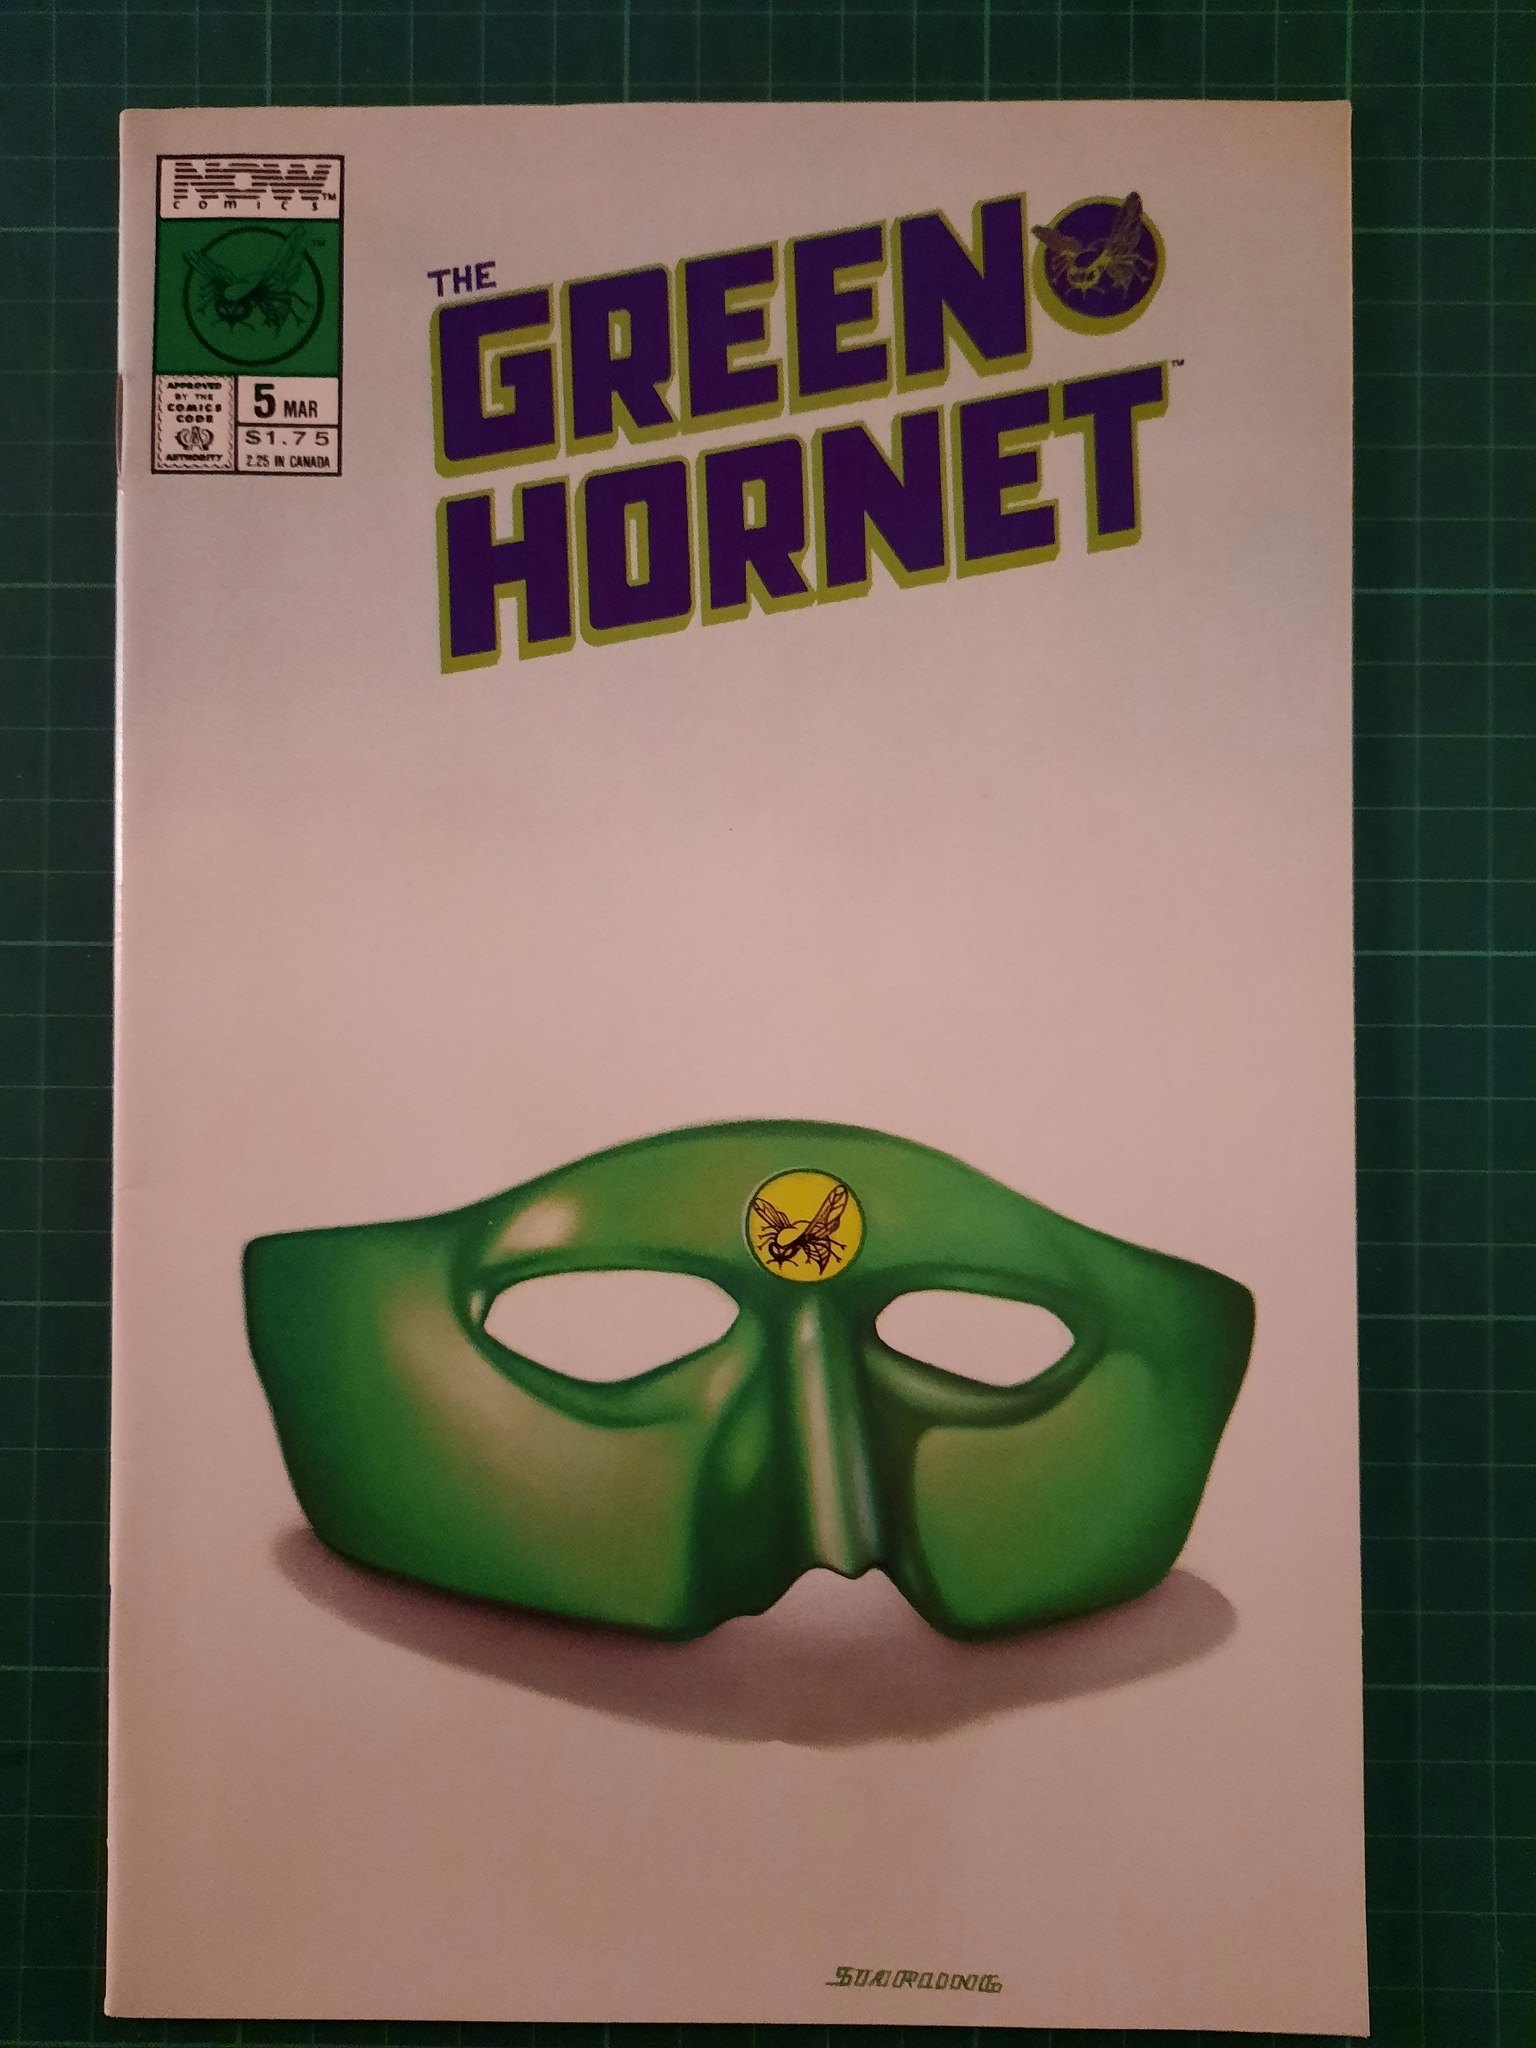 The green hornet #05